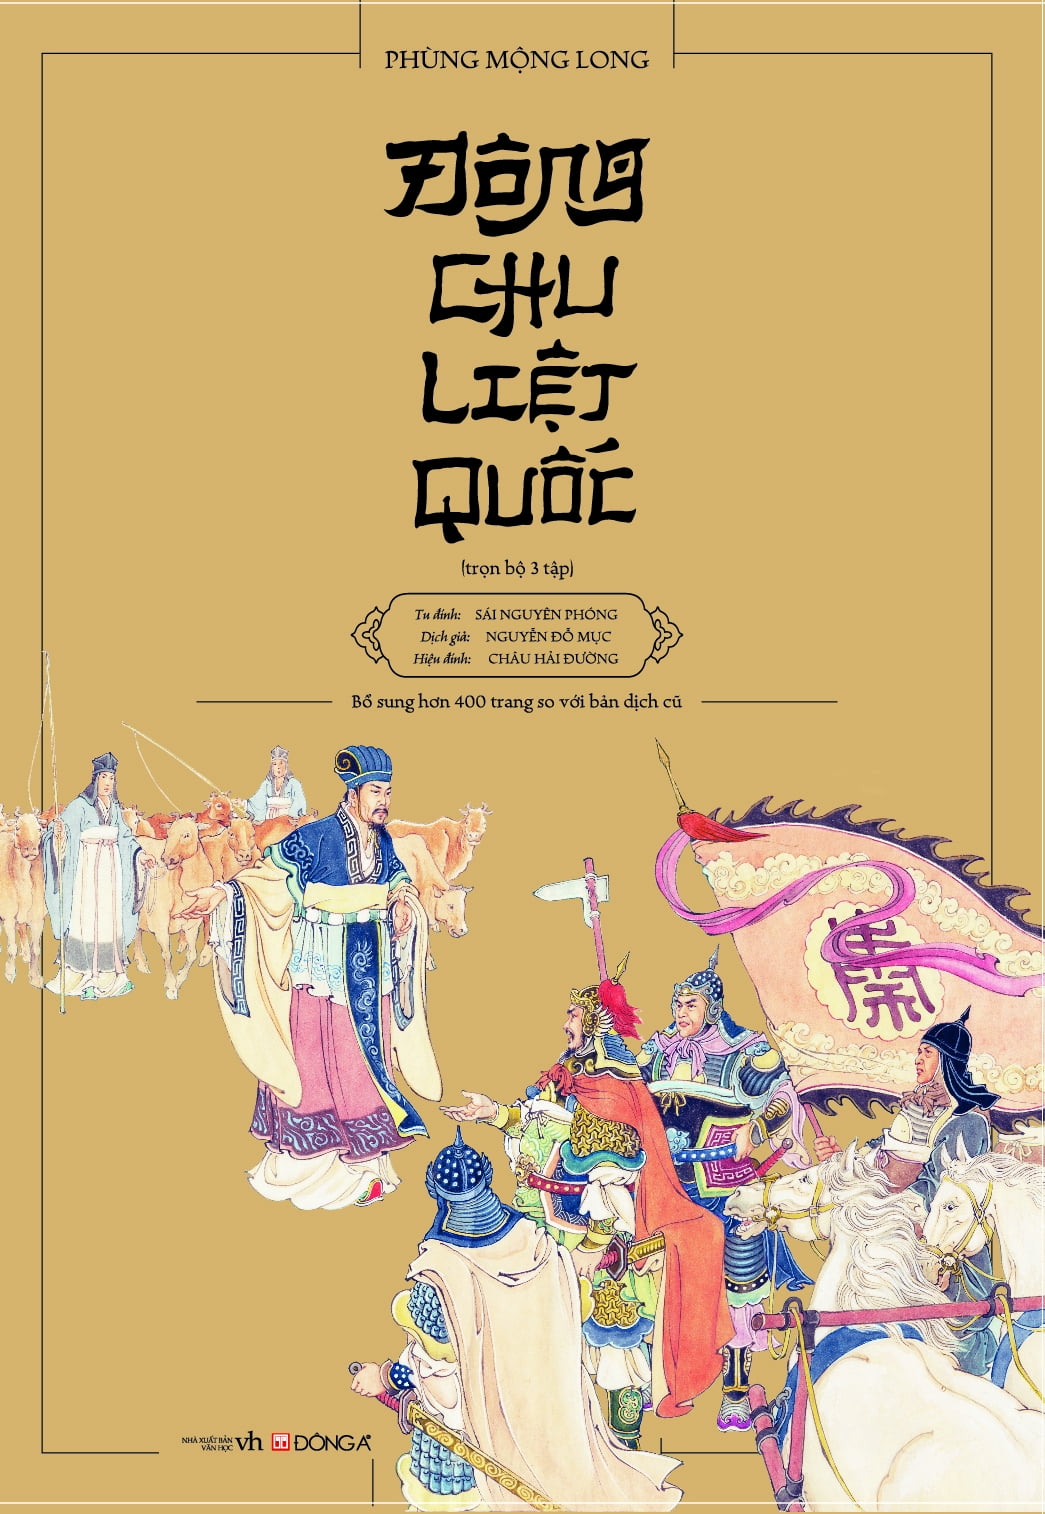 Bộ Hộp: Đông Chu Liệt Quốc (Bộ 3 Tập)